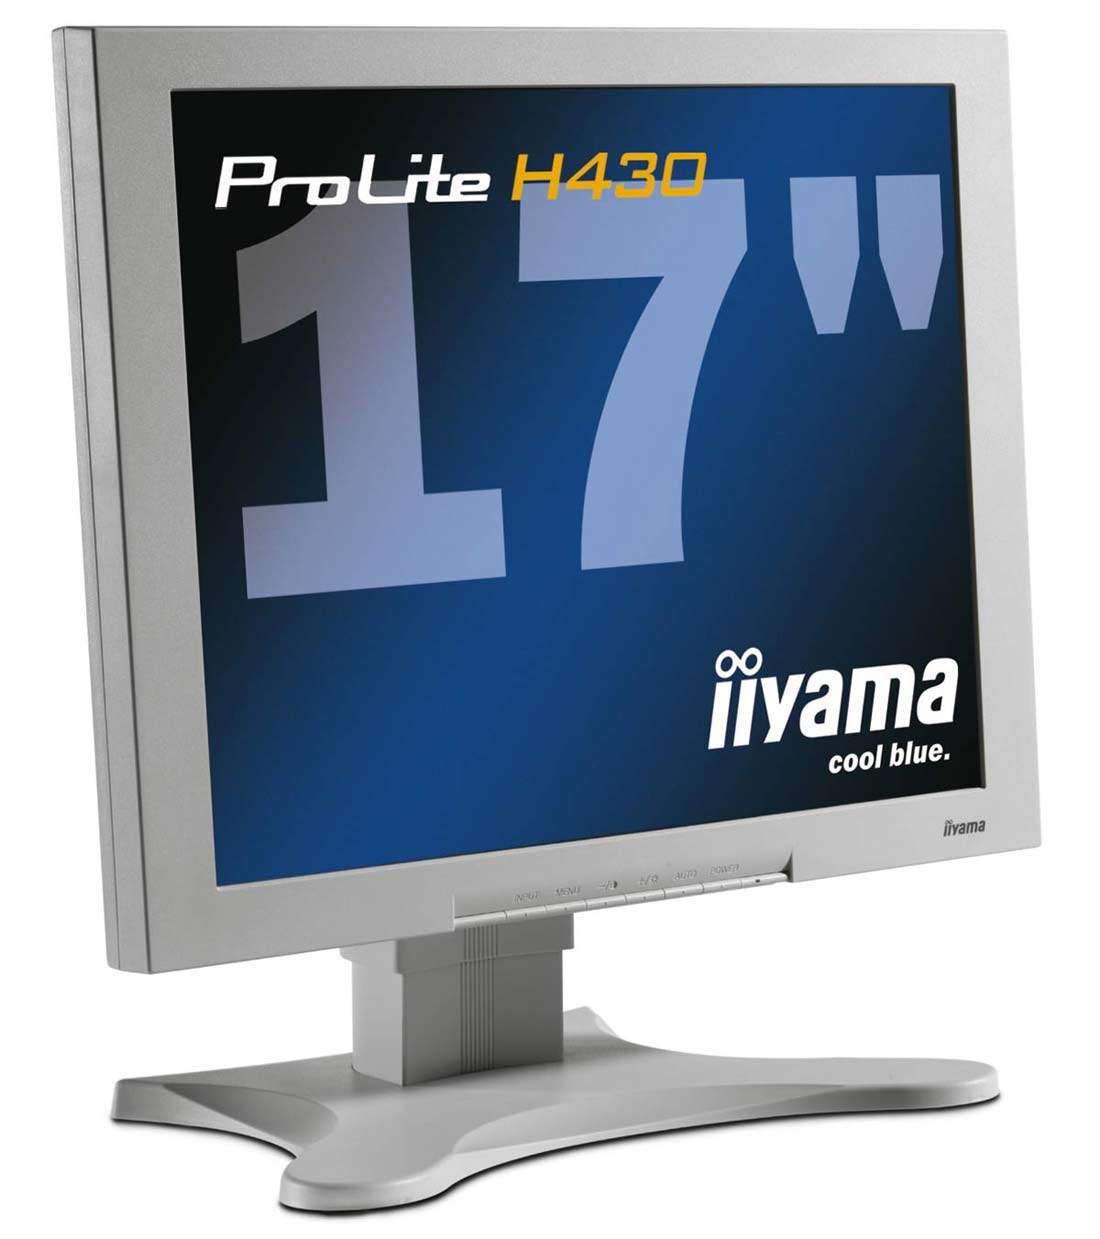 Новый 17-дюймовый монитор Pro Lite H430, созданный на основе IPS-матрицы, п...